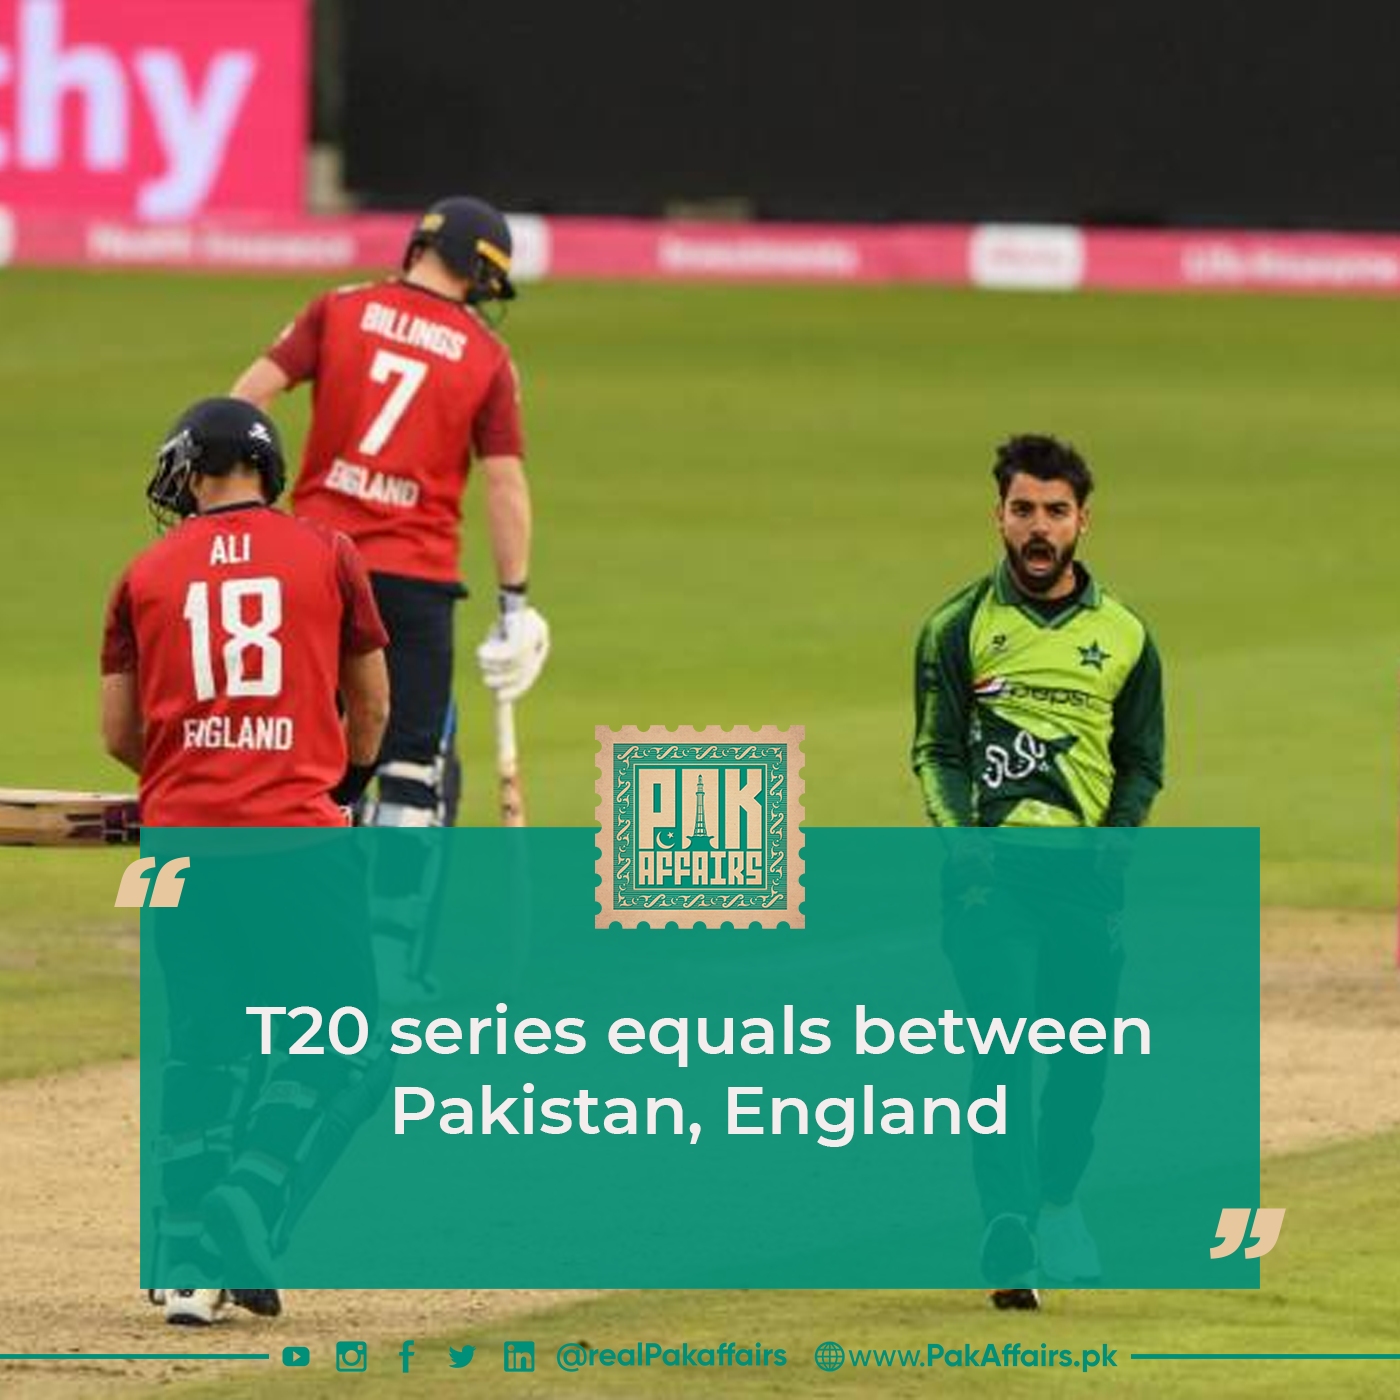 T20 series equals between Pakistan, England